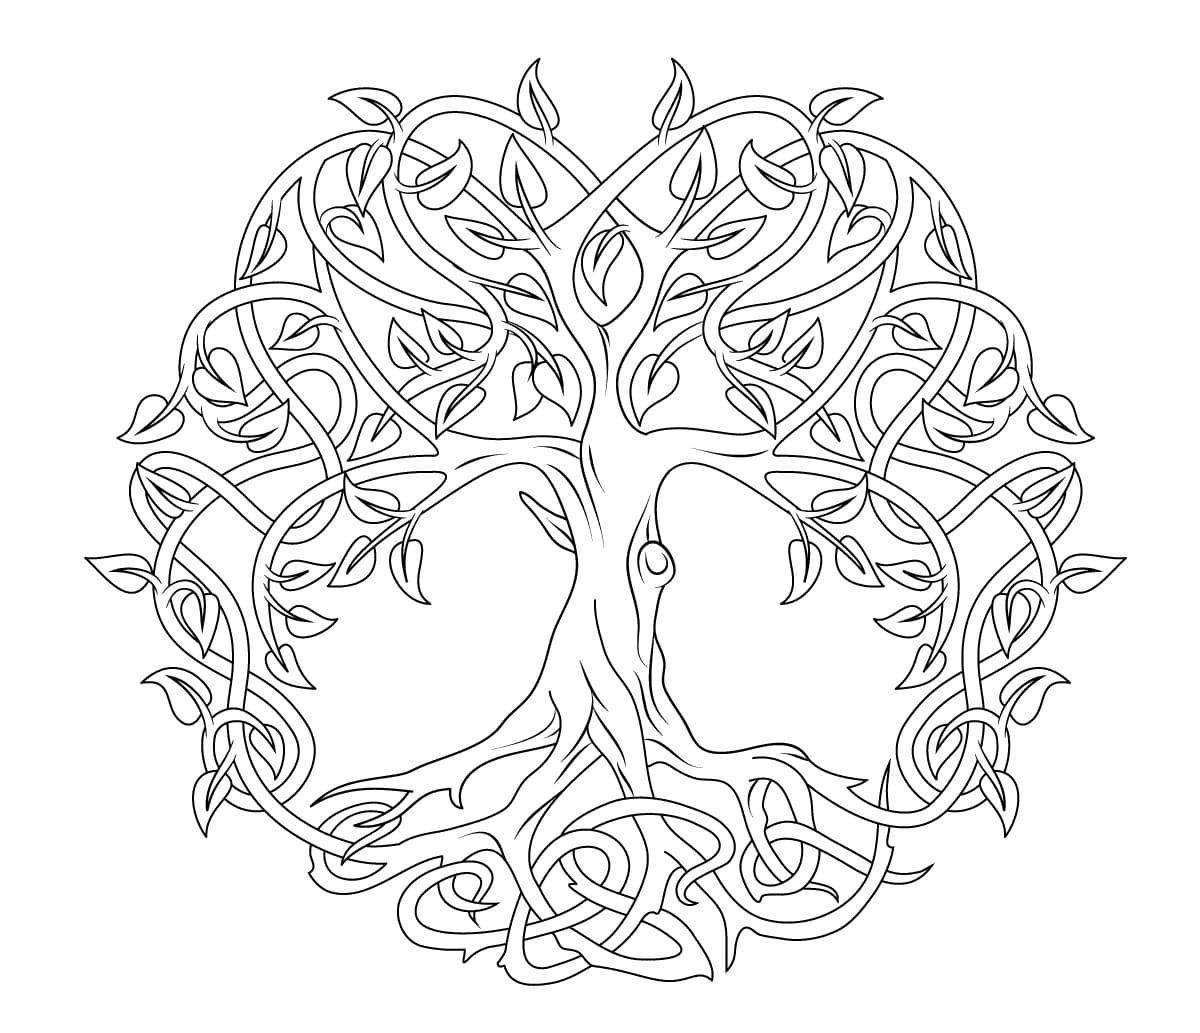 Arbre de Vie Celtique coloring page